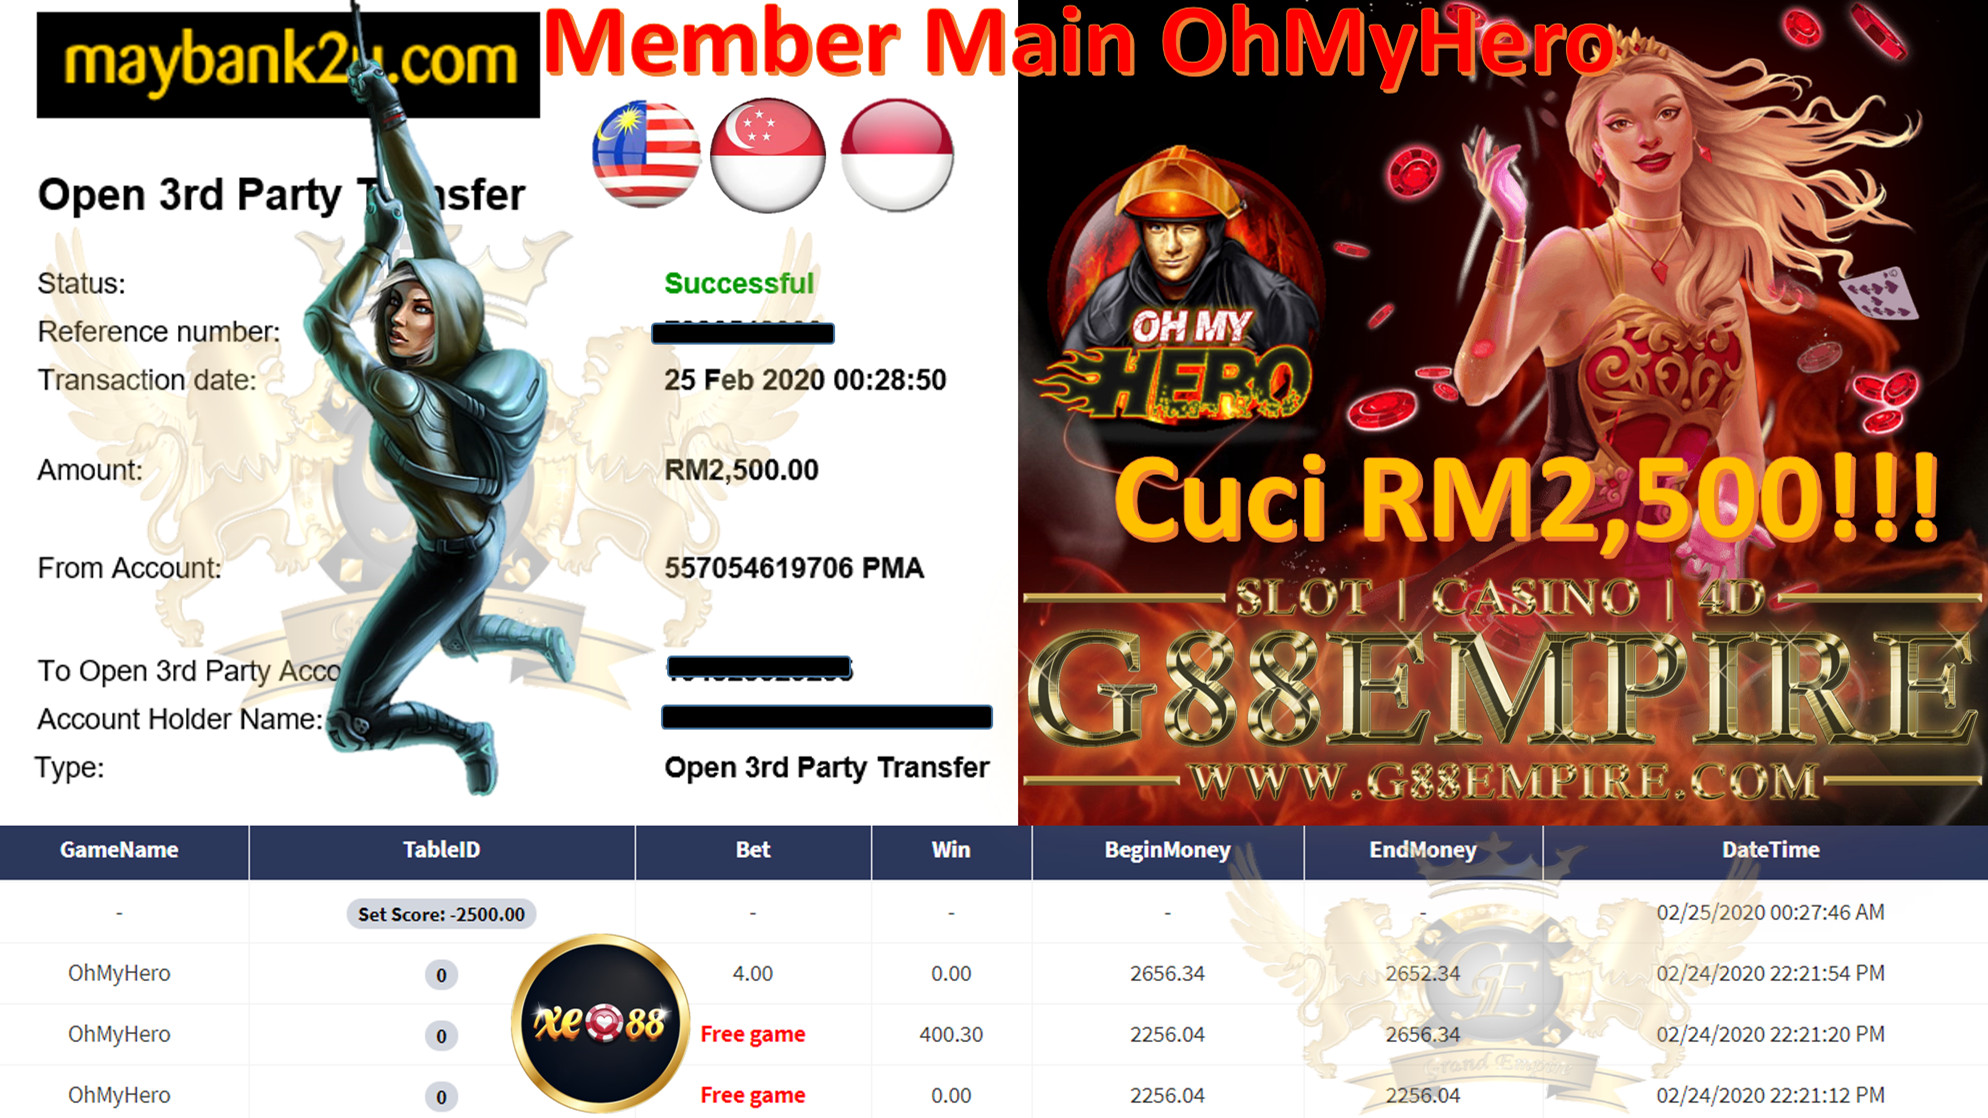 MEMBER MAIN OHMYHERO CUCI RM2,500!!!